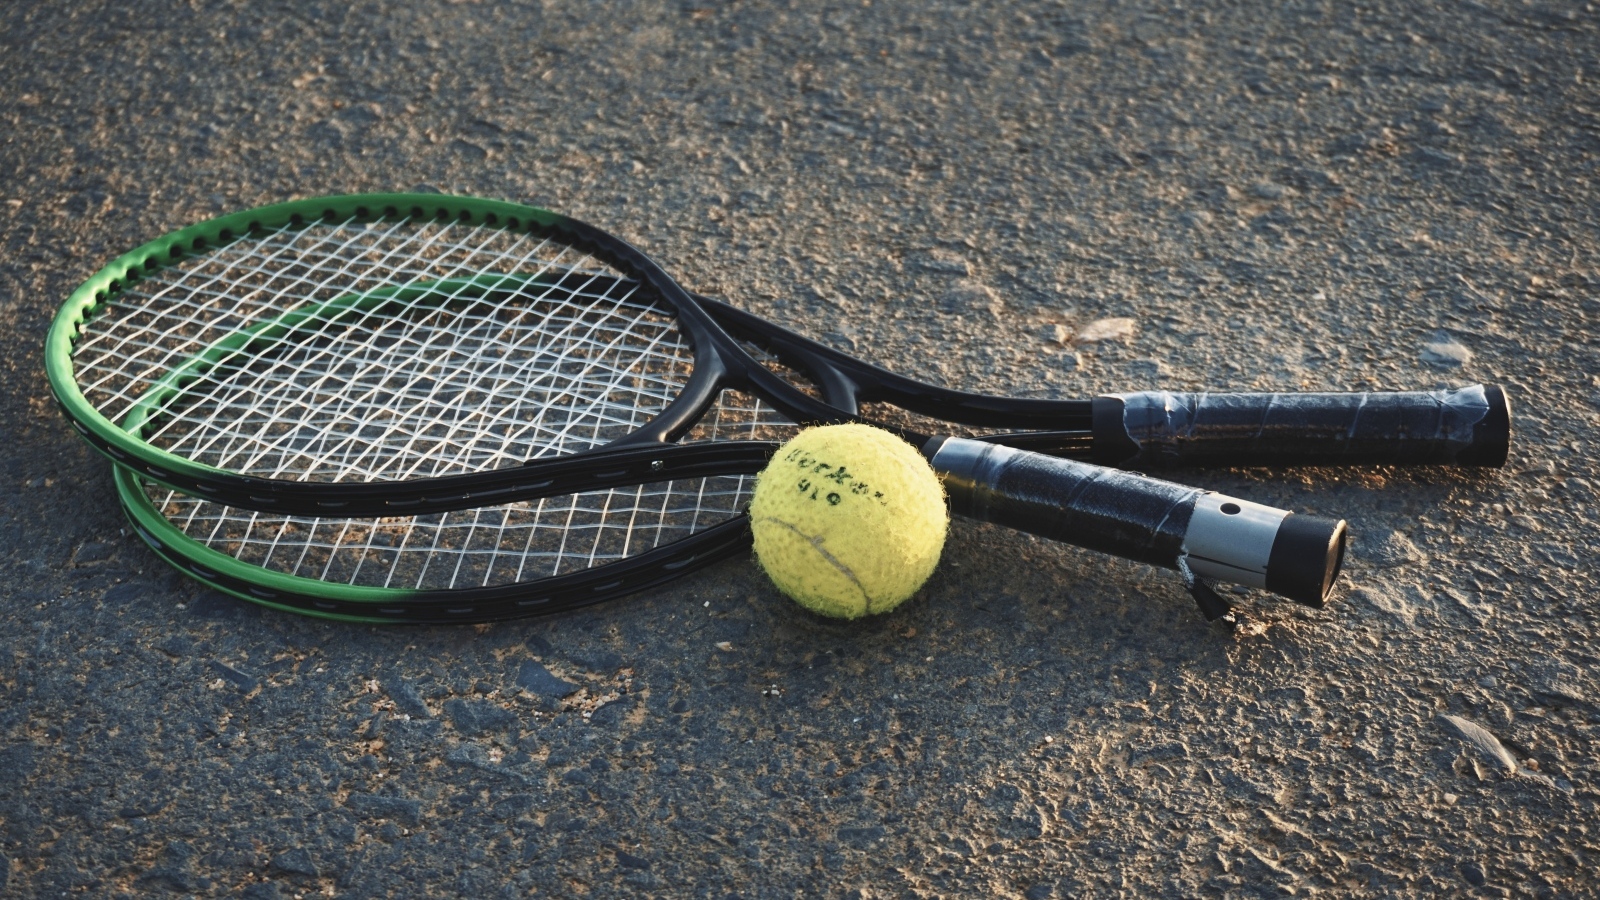 Две ракетки и желтый мяч для тенниса на асфальте